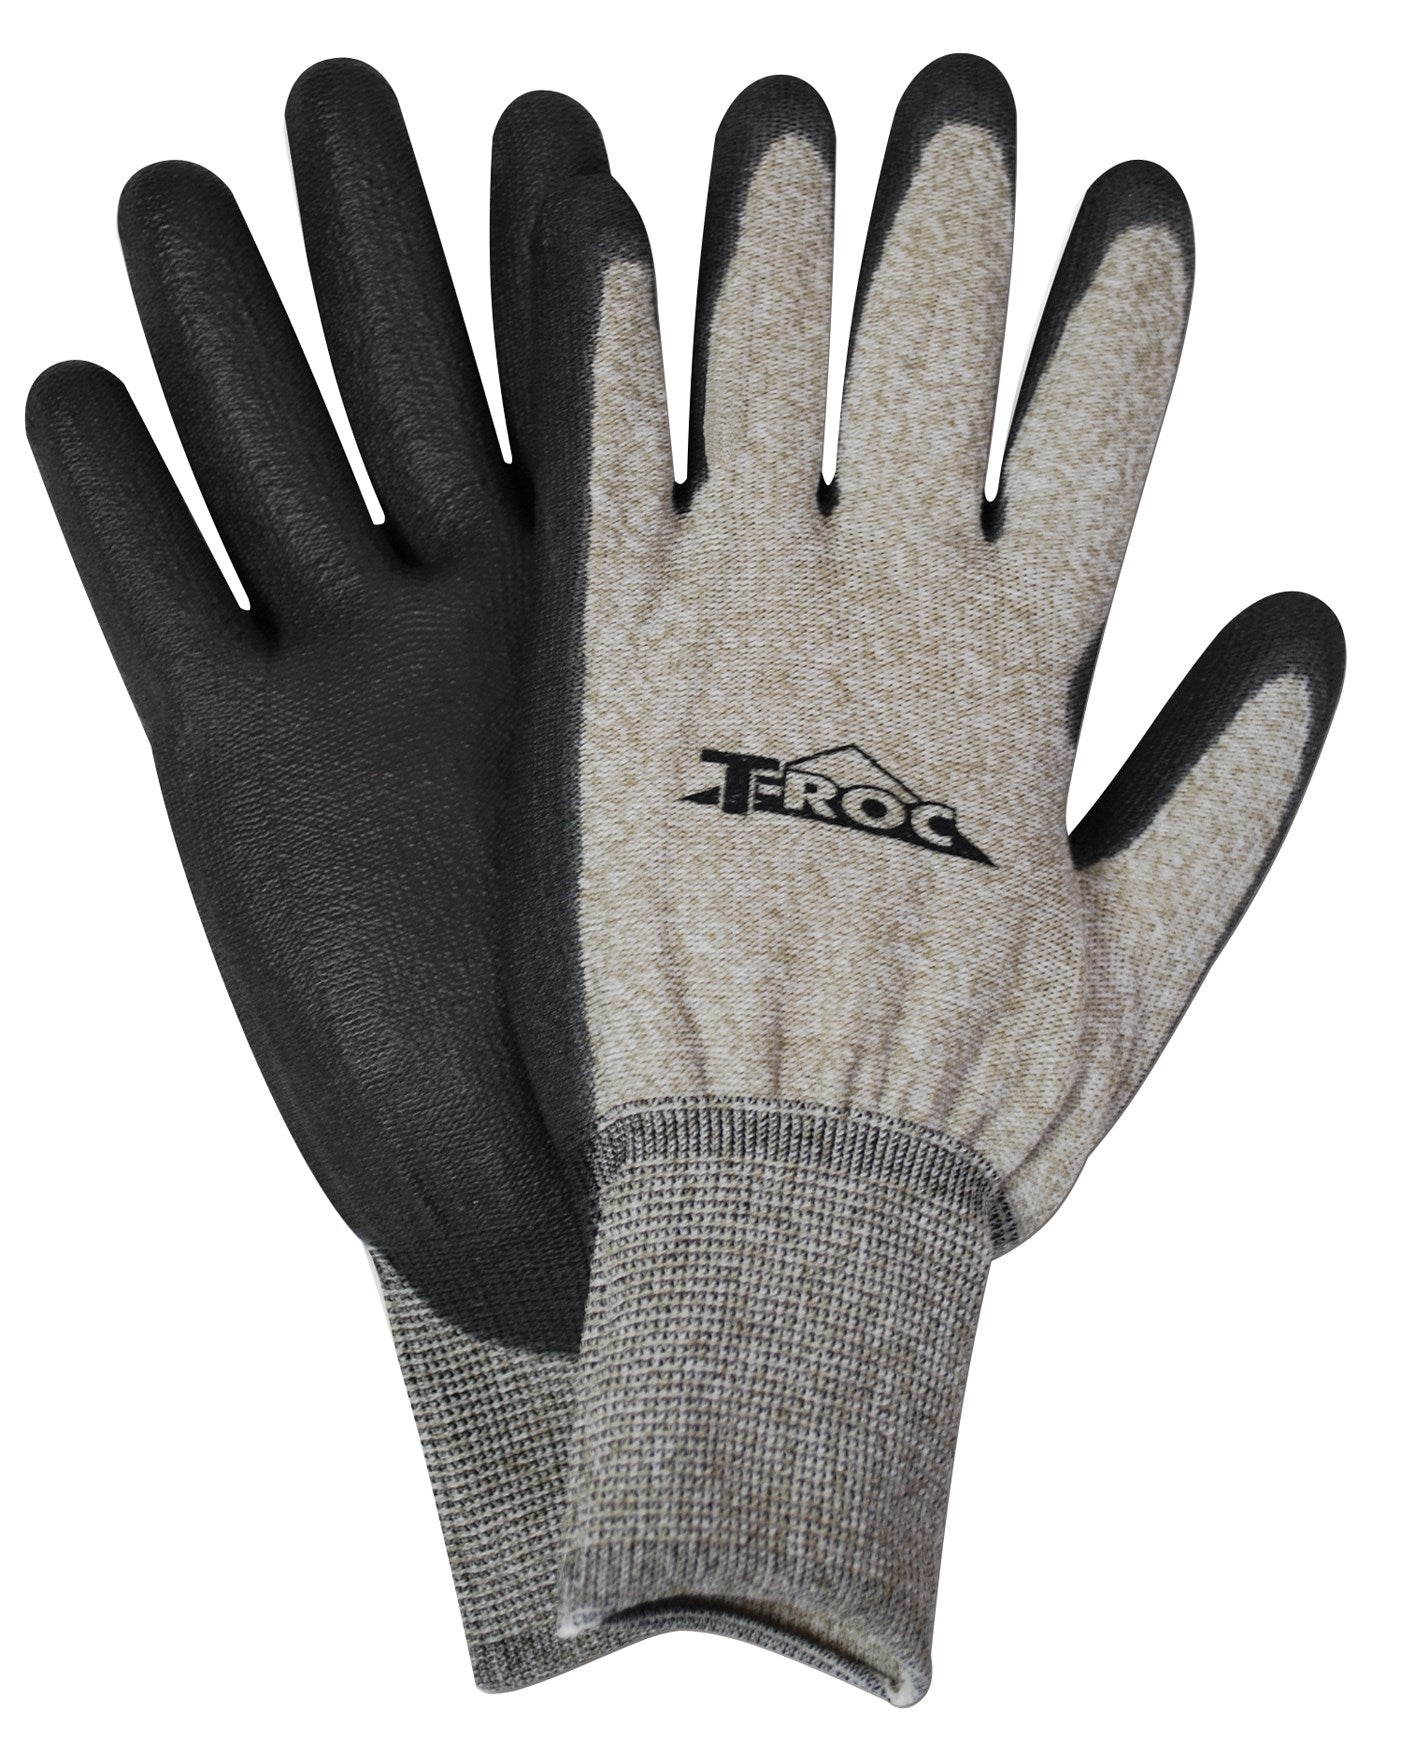 Gant Magid, Magid Glove ROC5000TL Grands gants ROC à écran tactile